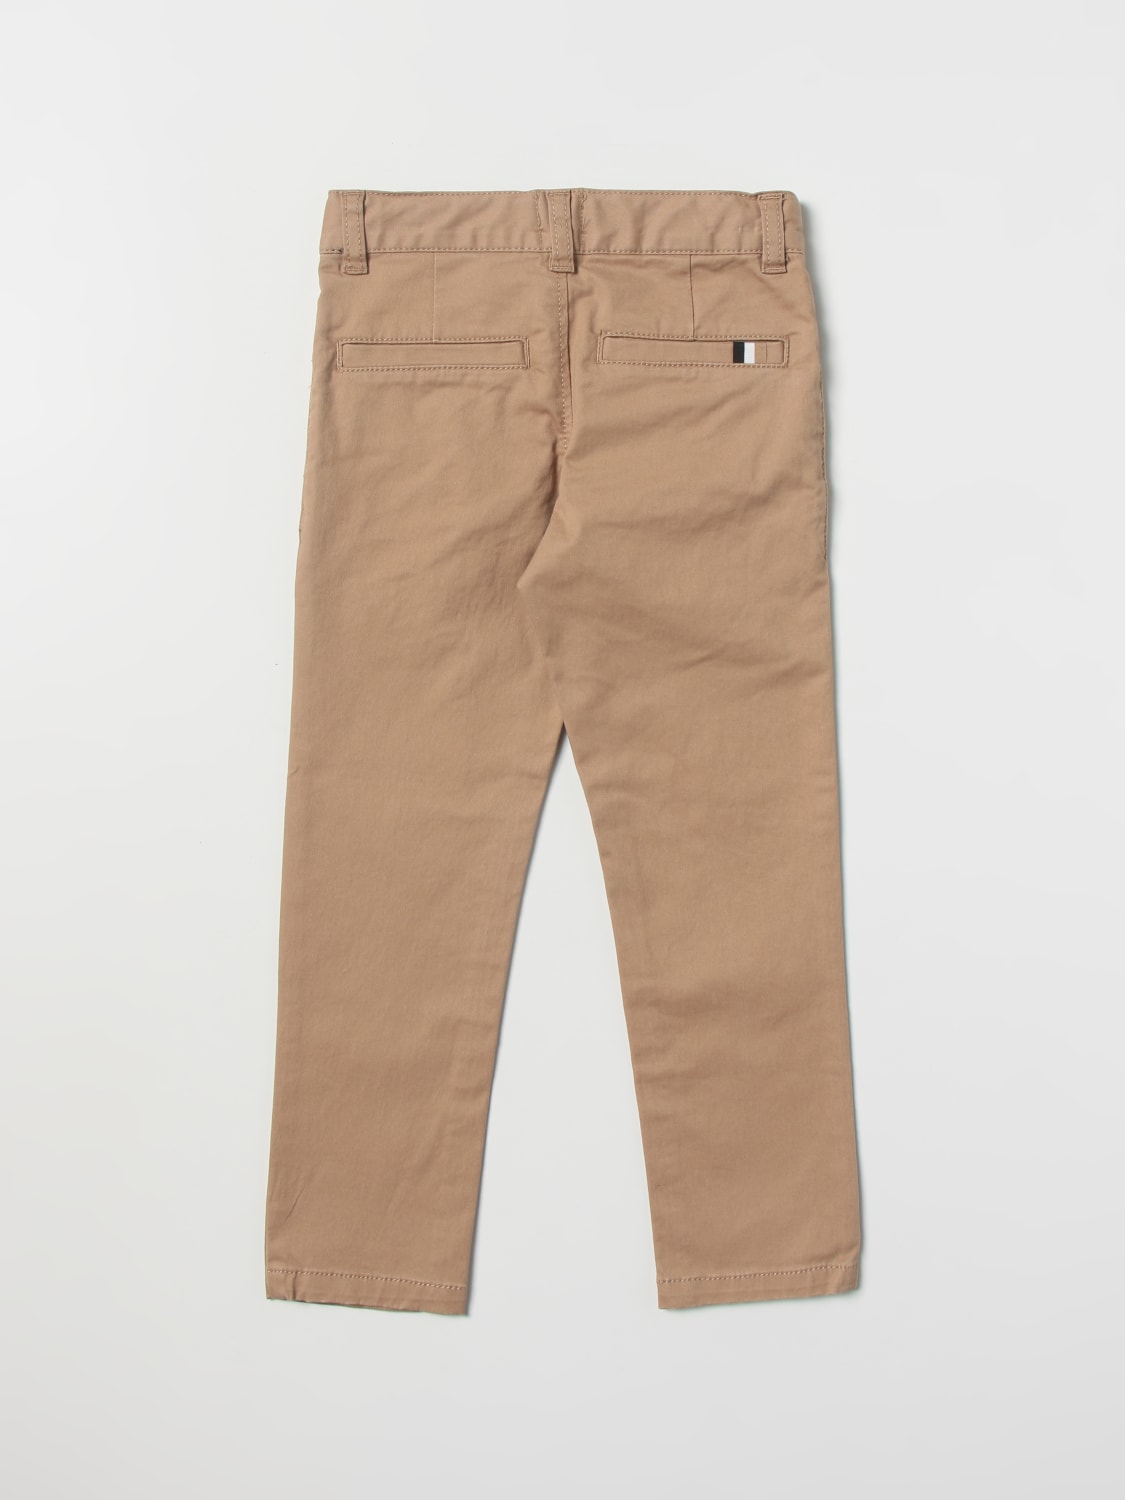 Pants in Brown by HUGO BOSS